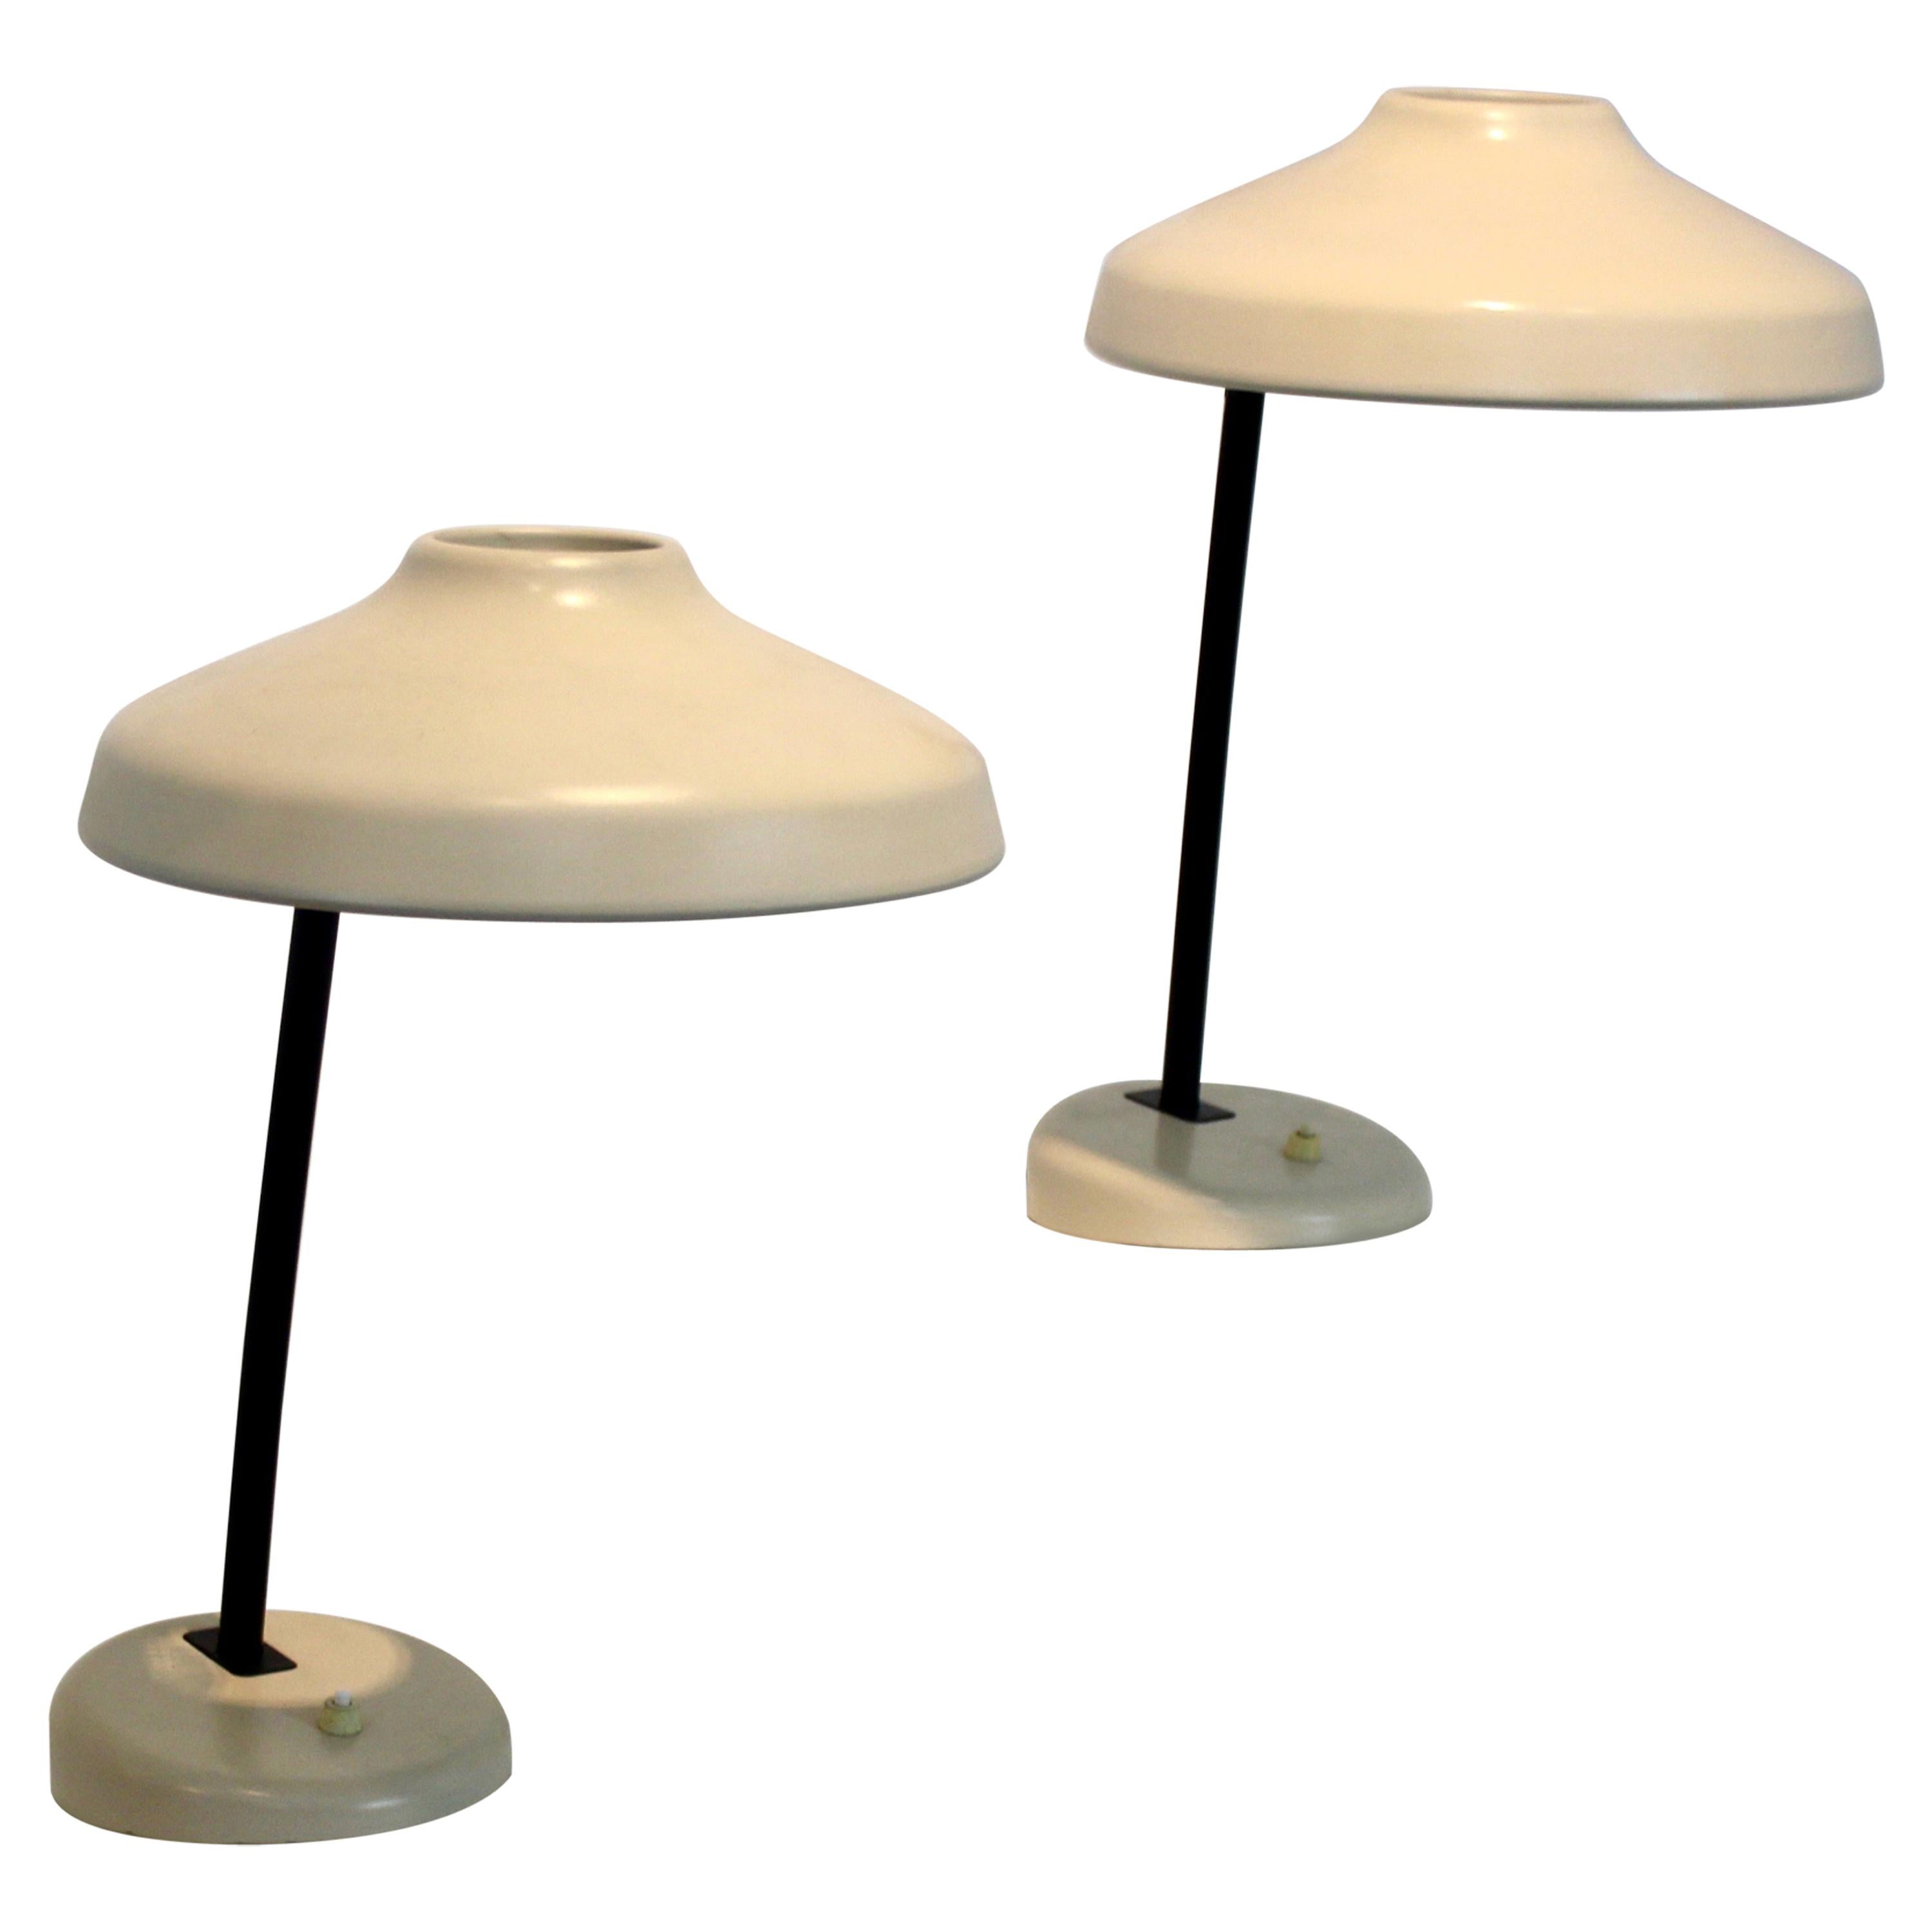 Charming Set of Adjustable Hemi Desk or Table Lamps, Sweden, 1960s For Sale